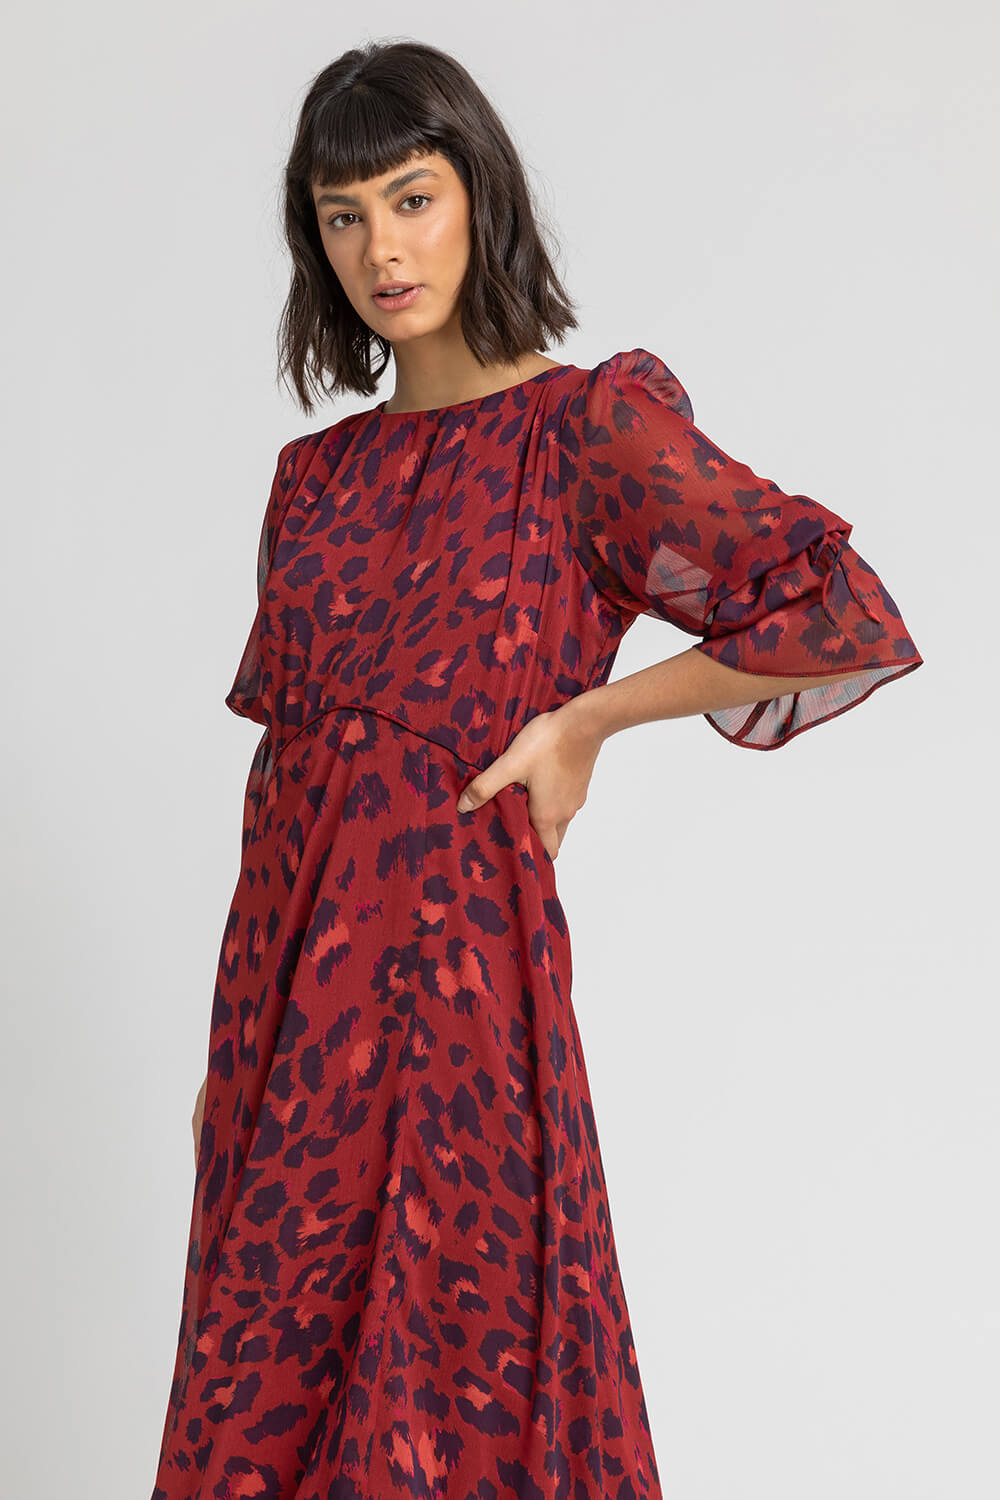 Rust Leopard Print Chiffon Maxi Dress, Image 5 of 5